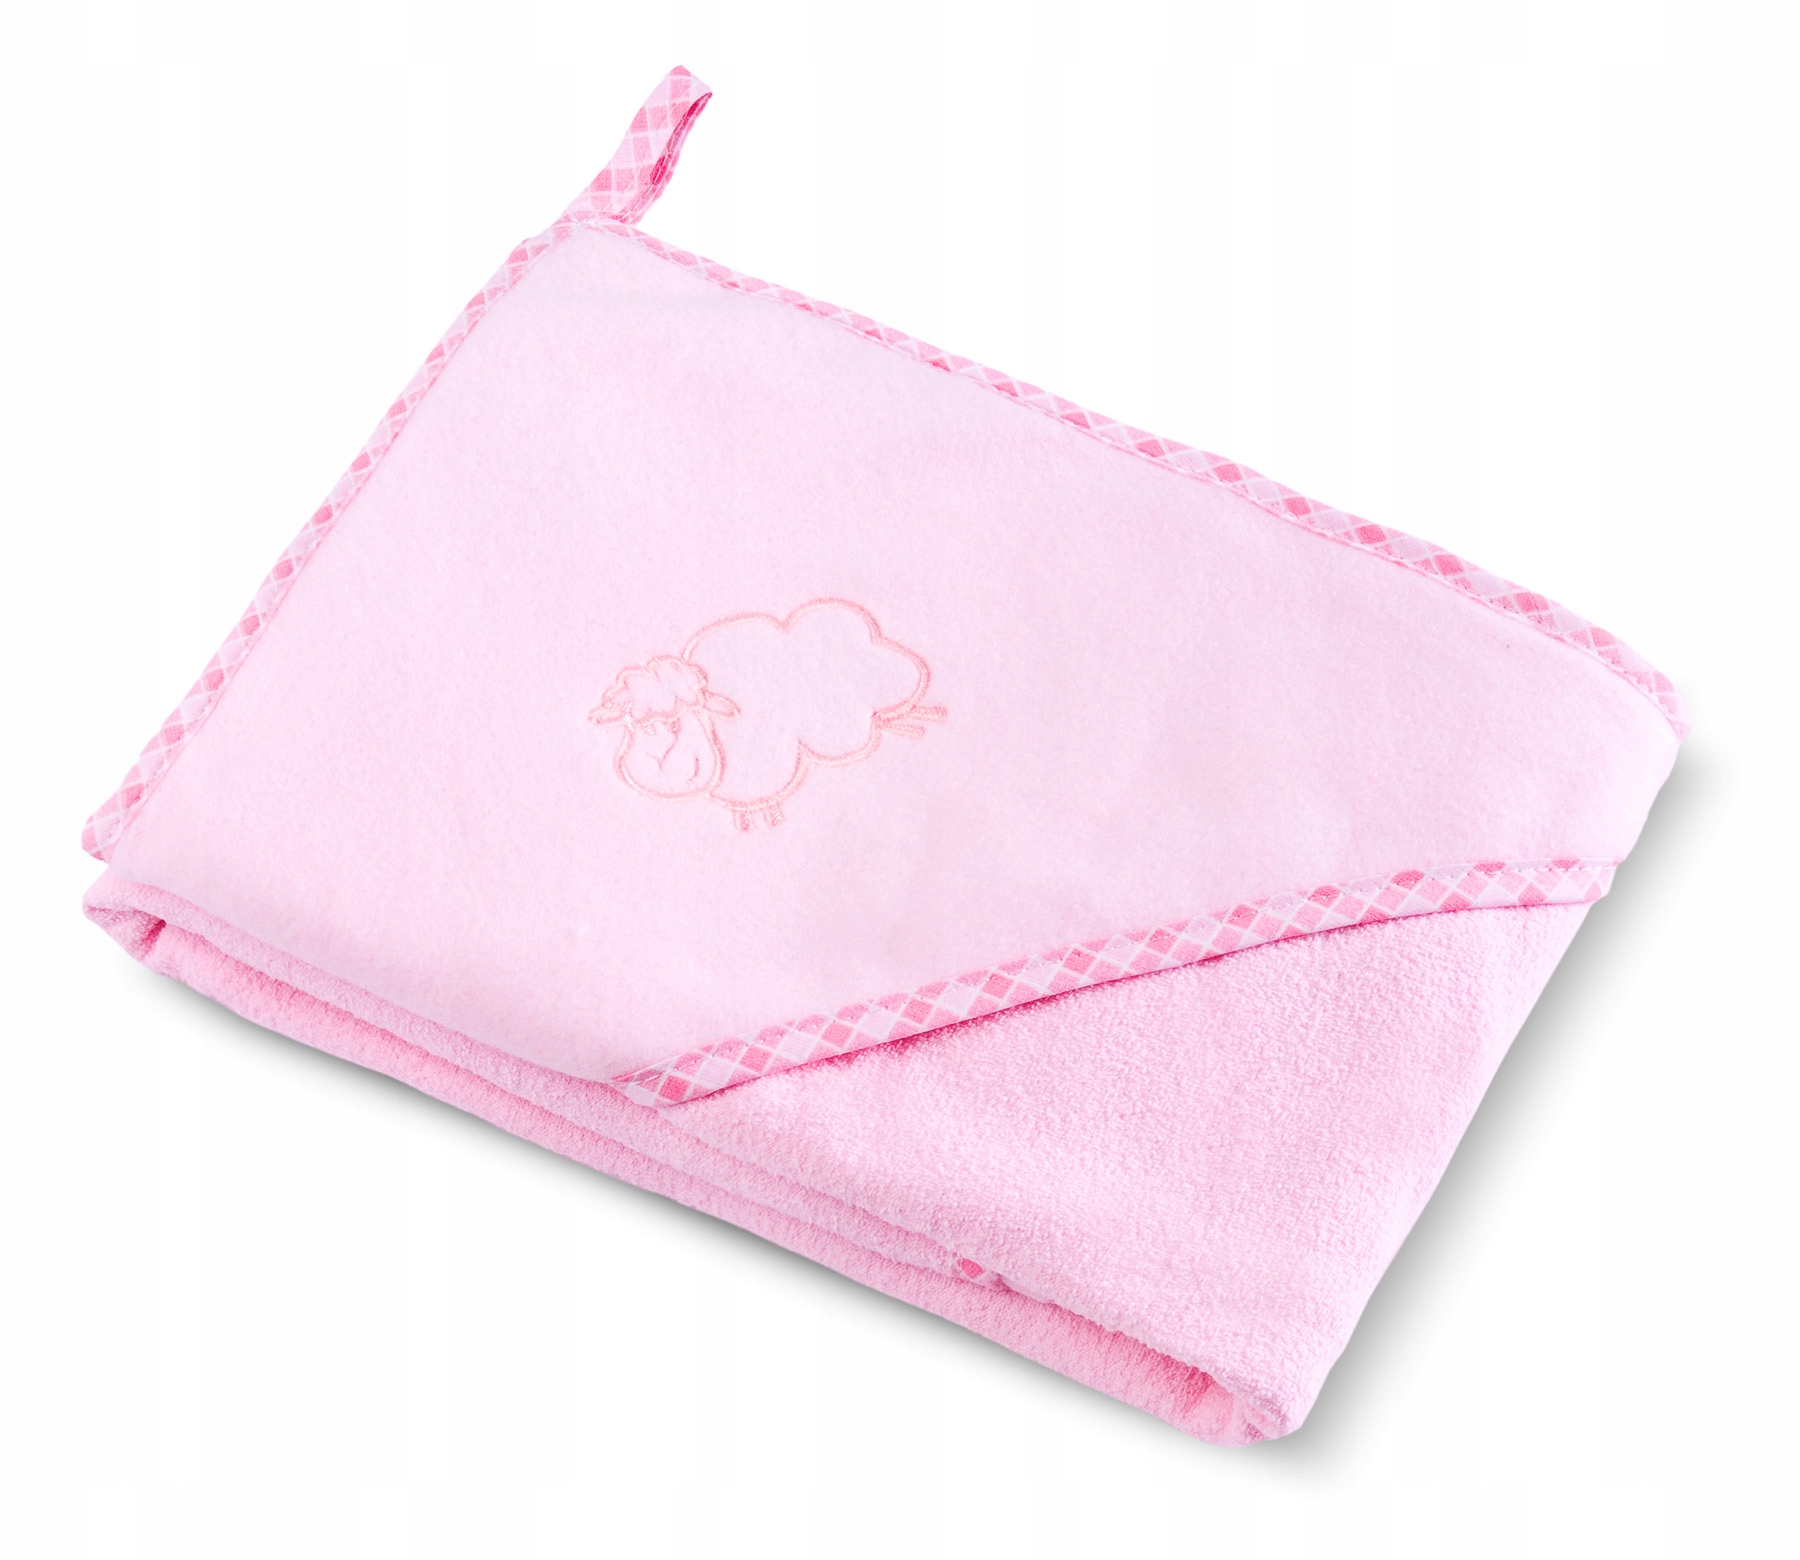 Полотенце 80 на 80. Полотенце для малыша розовое. 80 На 80 полотенце. Полотенце уголок 80х80. Шапка полотенце для детей махровая.